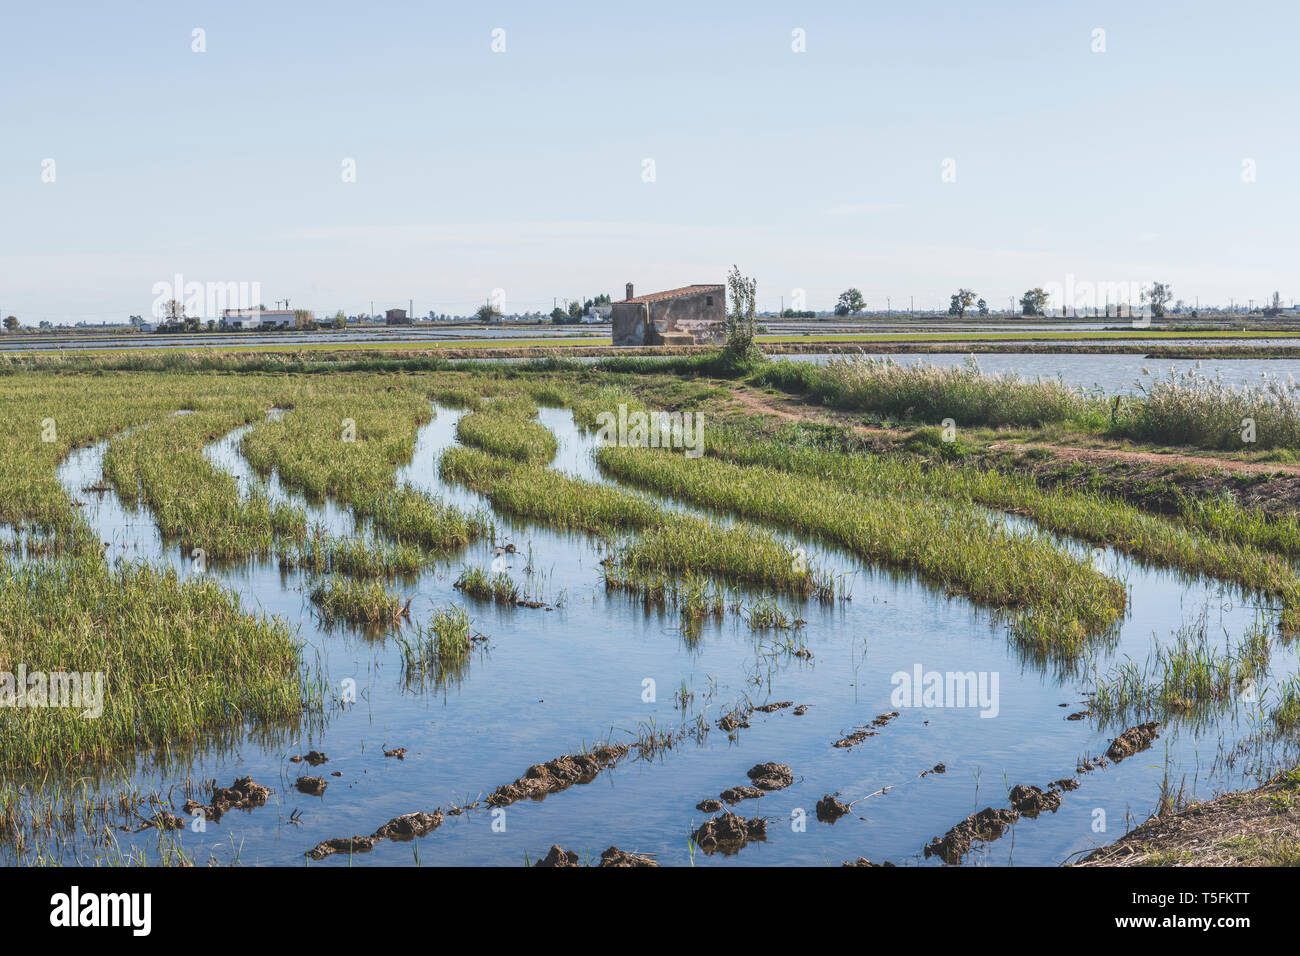 In Spagna, il delta del fiume Ebro, vista di risaie. Foto Stock